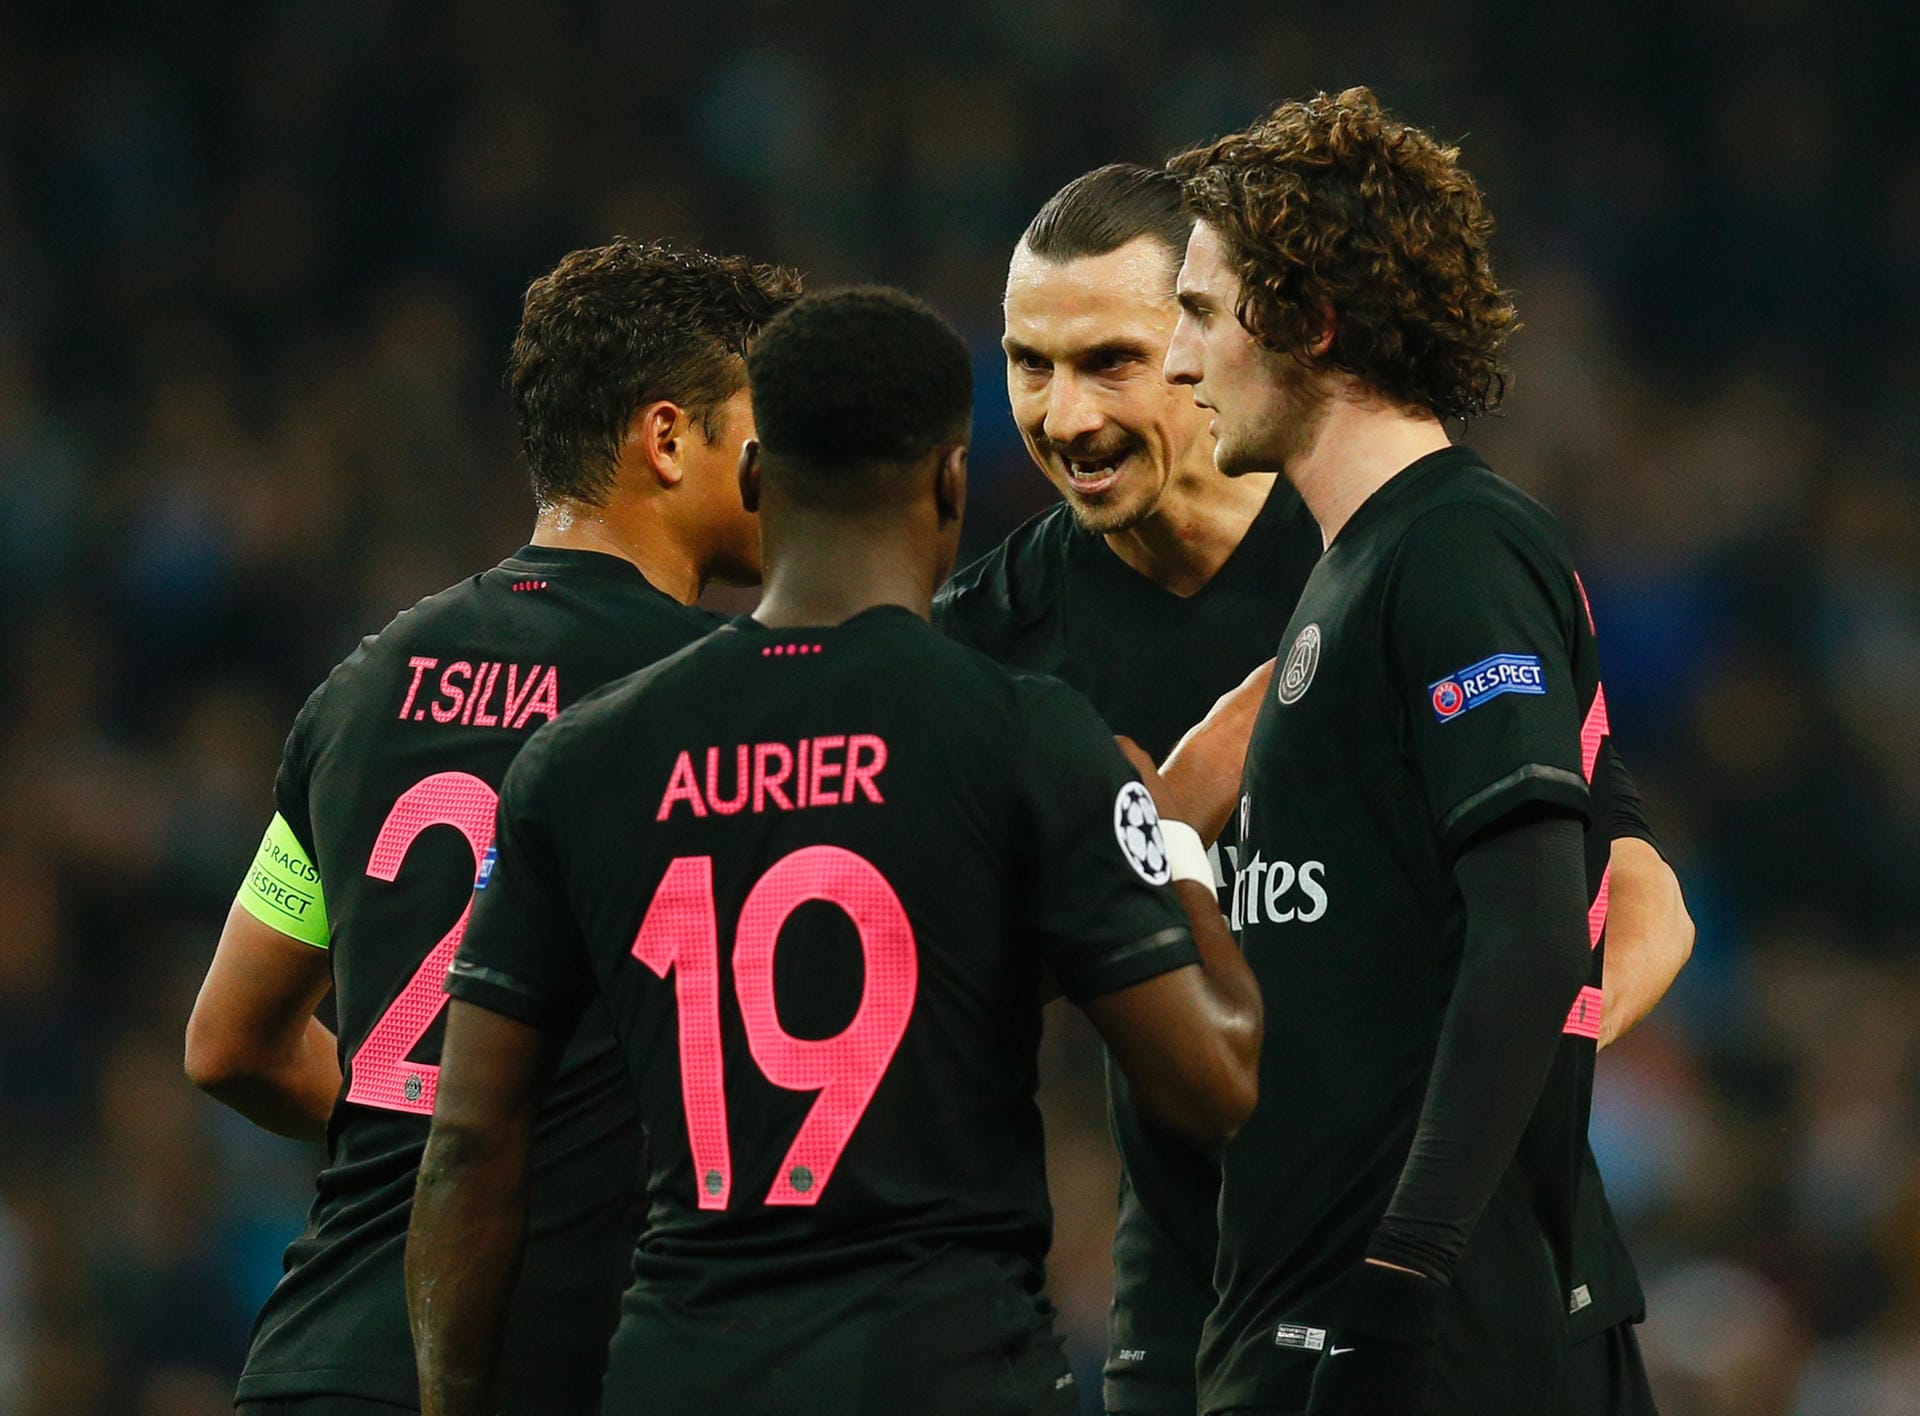 Der Boss schwört sein Team ein: In Manchester hören die PSG-Mitspieler auf das, was Zlatan Ibrahimovic (2. v. re.) sagt.